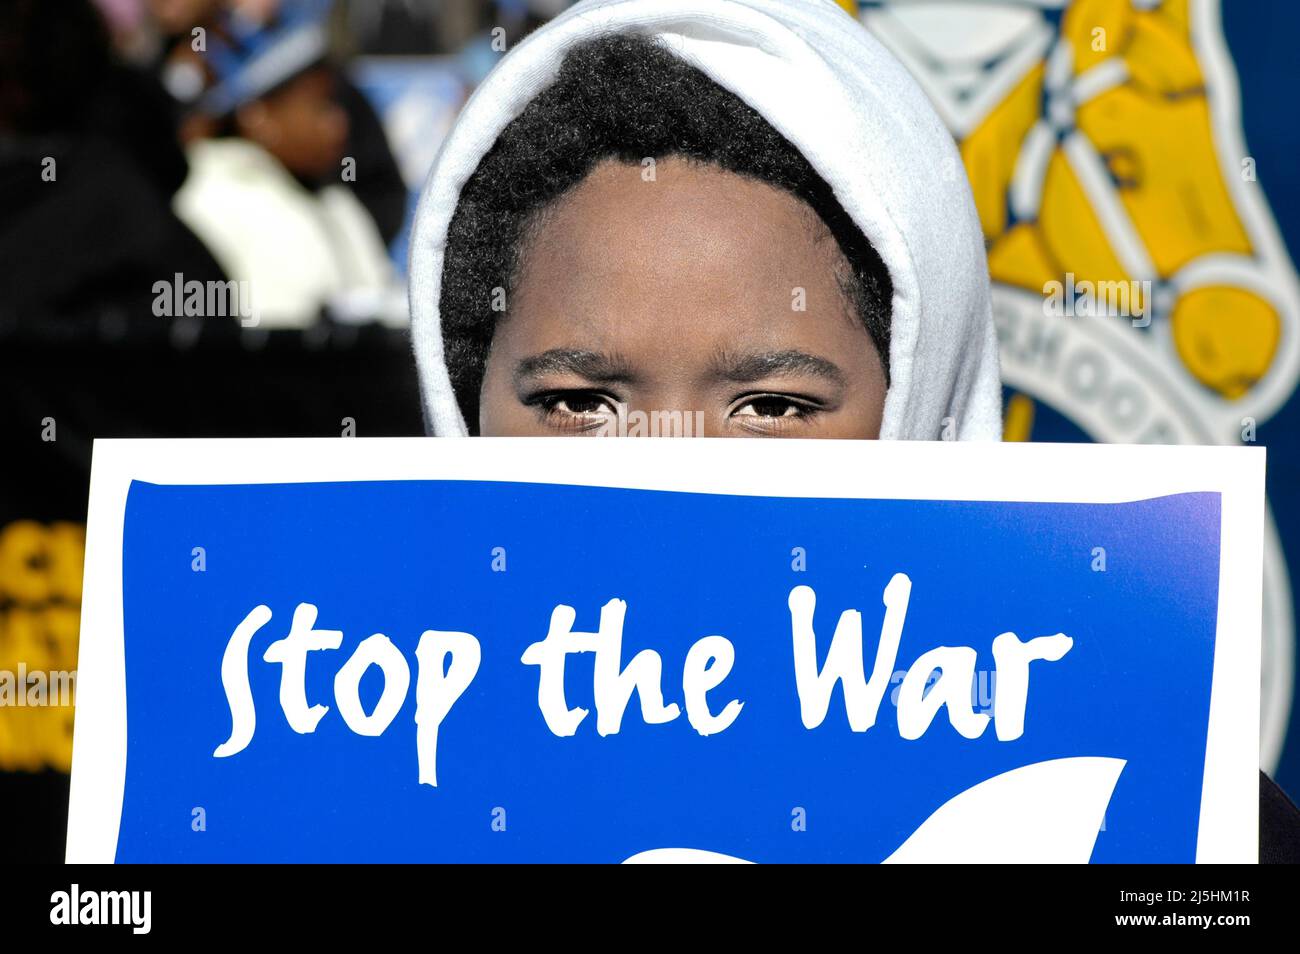 Giovane etnia ragazzo nero al rally dimostrativo anti guerra ad Atlanta GA, guardando la macchina fotografica con il segno Stop the War Foto Stock